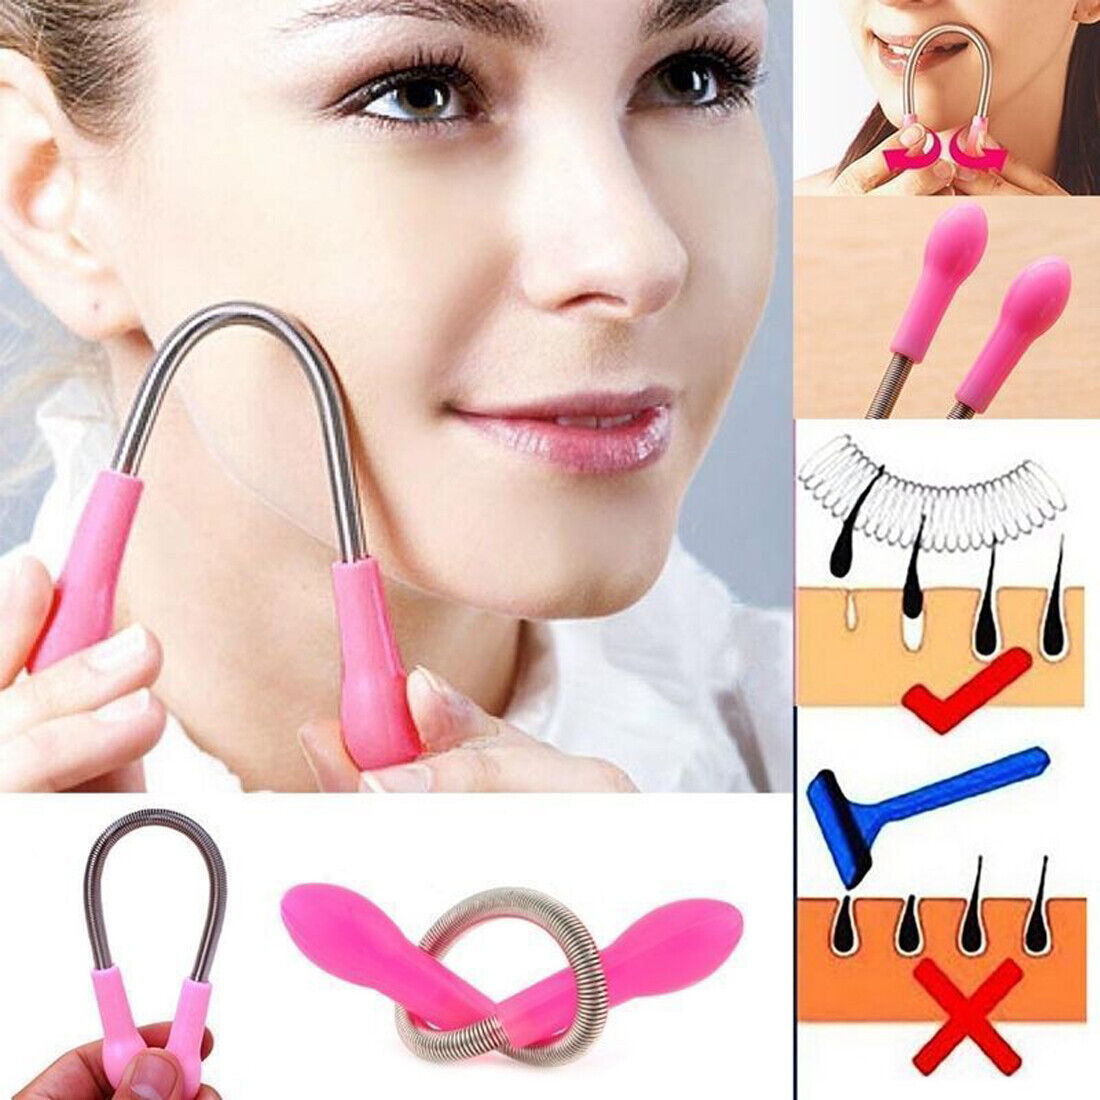 New Women Face Facial Hair Remover Spring Threader Removal Epilator Stick  Beauty | eBay